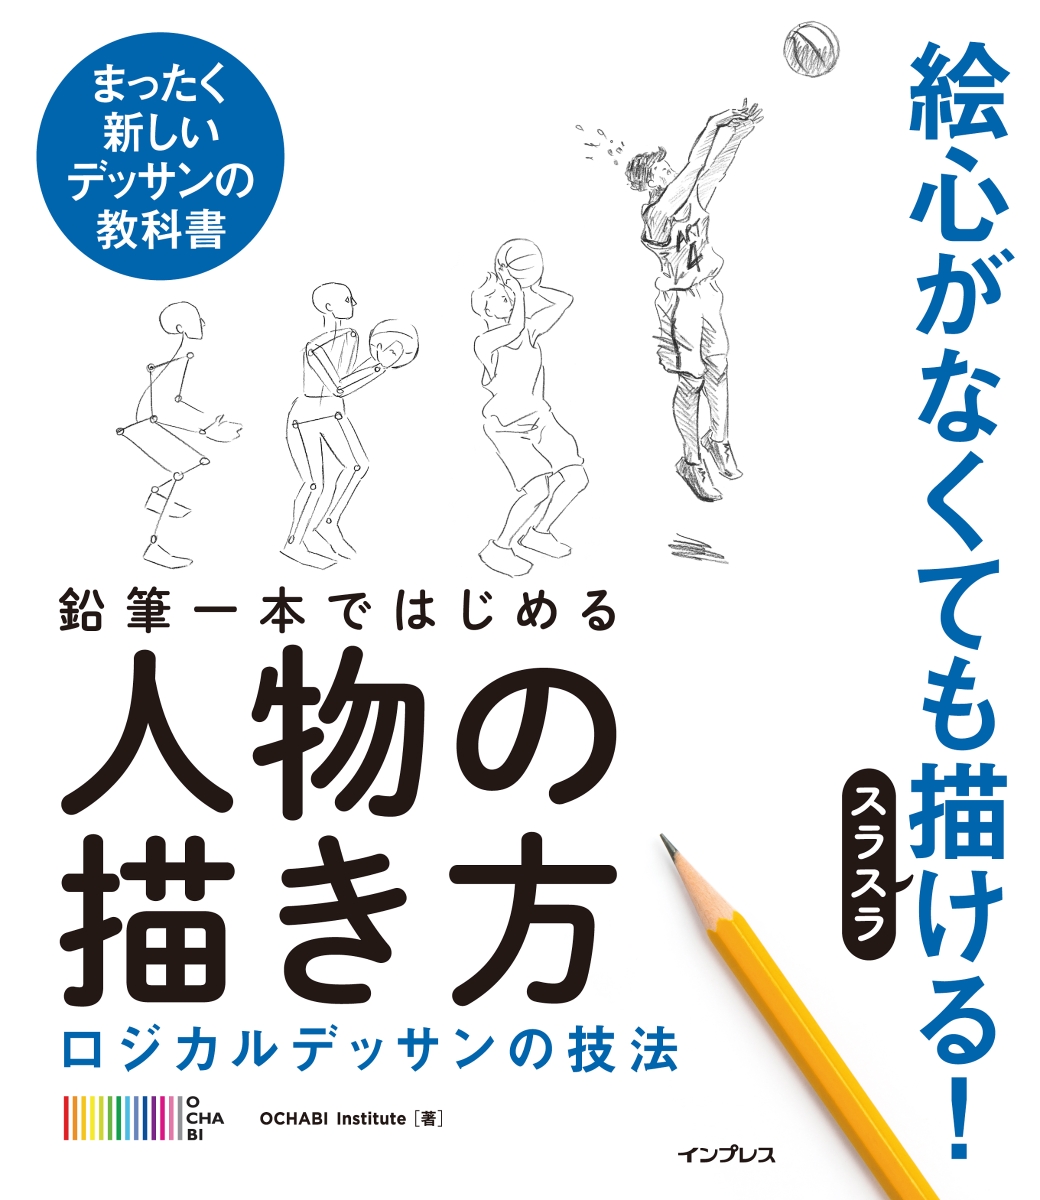 楽天ブックス 鉛筆一本ではじめる人物の描き方 ロジカルデッサンの技法 Ochabi Institute 本